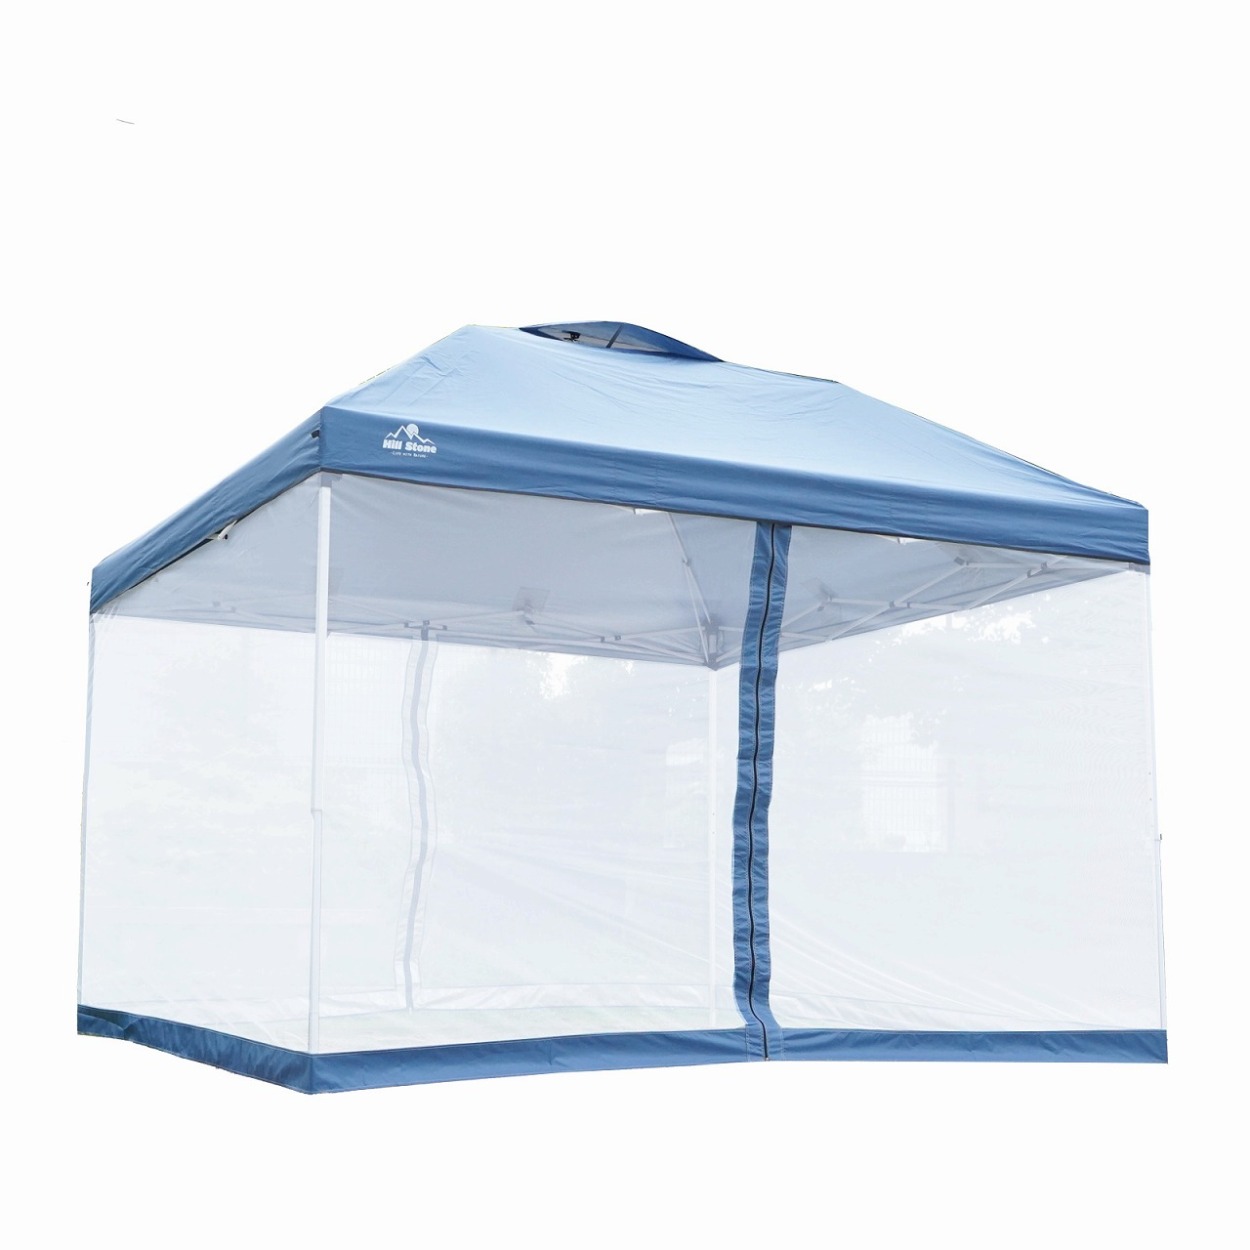 テント タープ 3m スクリーンタープ メッシュシート セット UVカット ワンタッチ タープテント アウトドア キャンプ レジャー 大型 蚊帳  日よけ 防水 送料無料